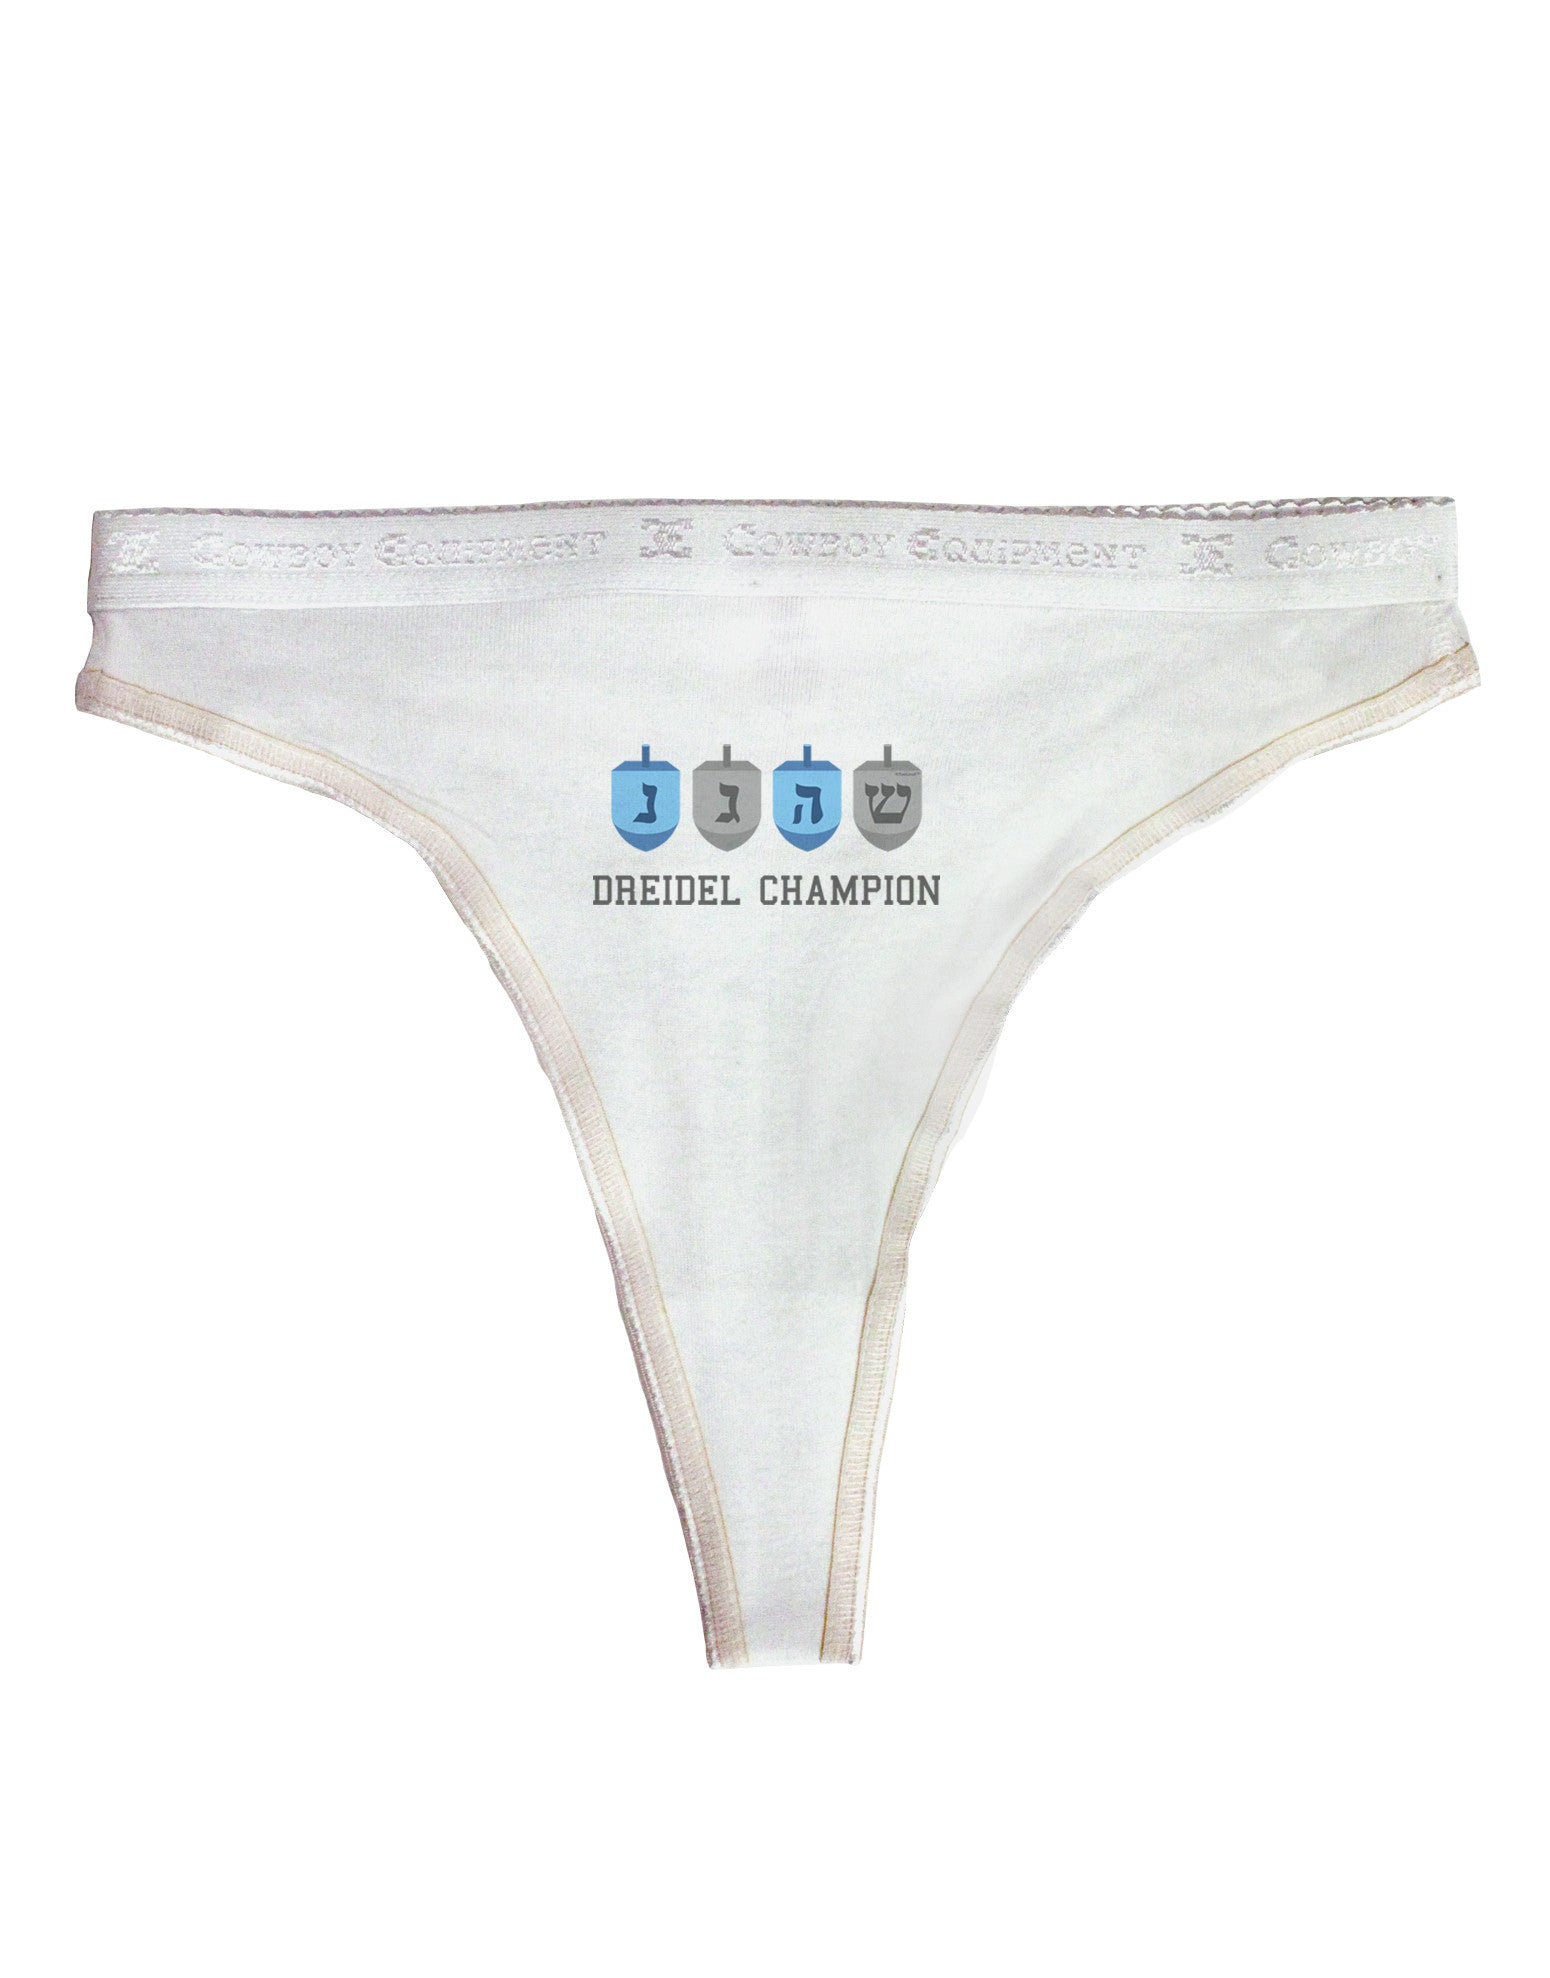 Dreidel Champion Hanukkah Womens Thong Underwear - Davson Sales